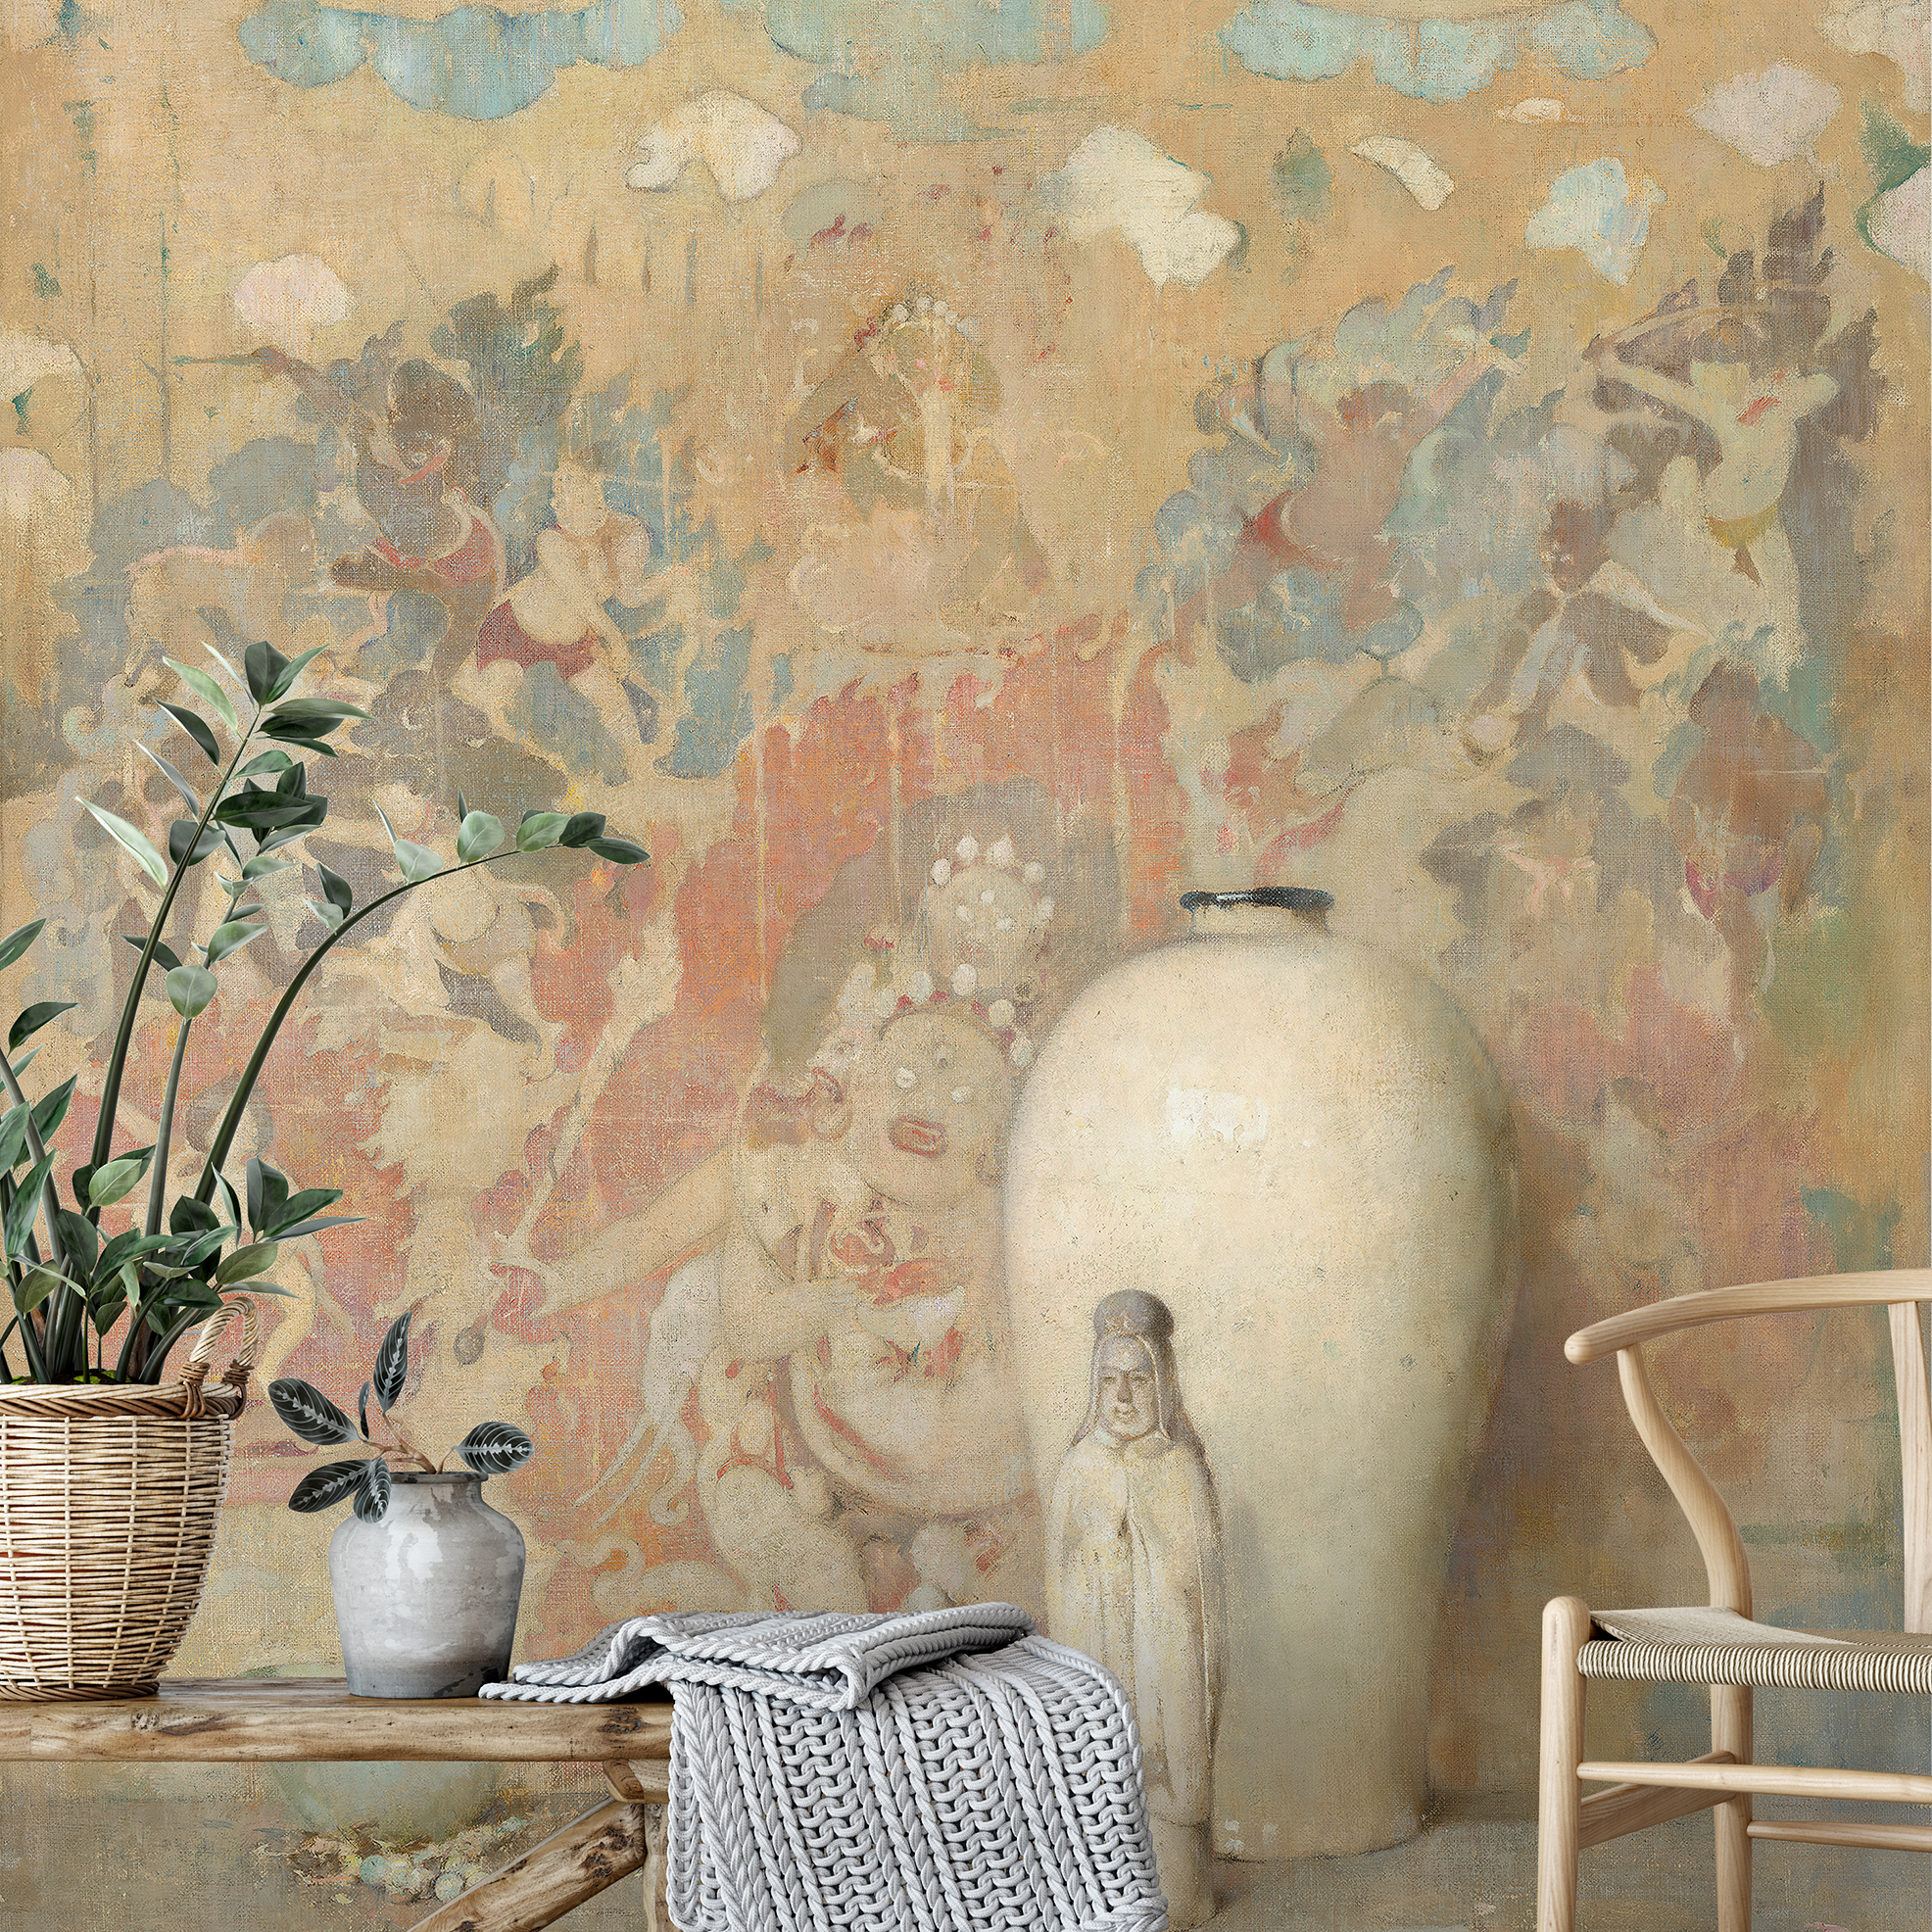 Die imposanten Wandbilder mit haptischen Elementen, hüllen nicht nur ihre Lebensräume in neuen Glanz sondern auch ihr persönliches Raumgefühl in 270 x 210cm